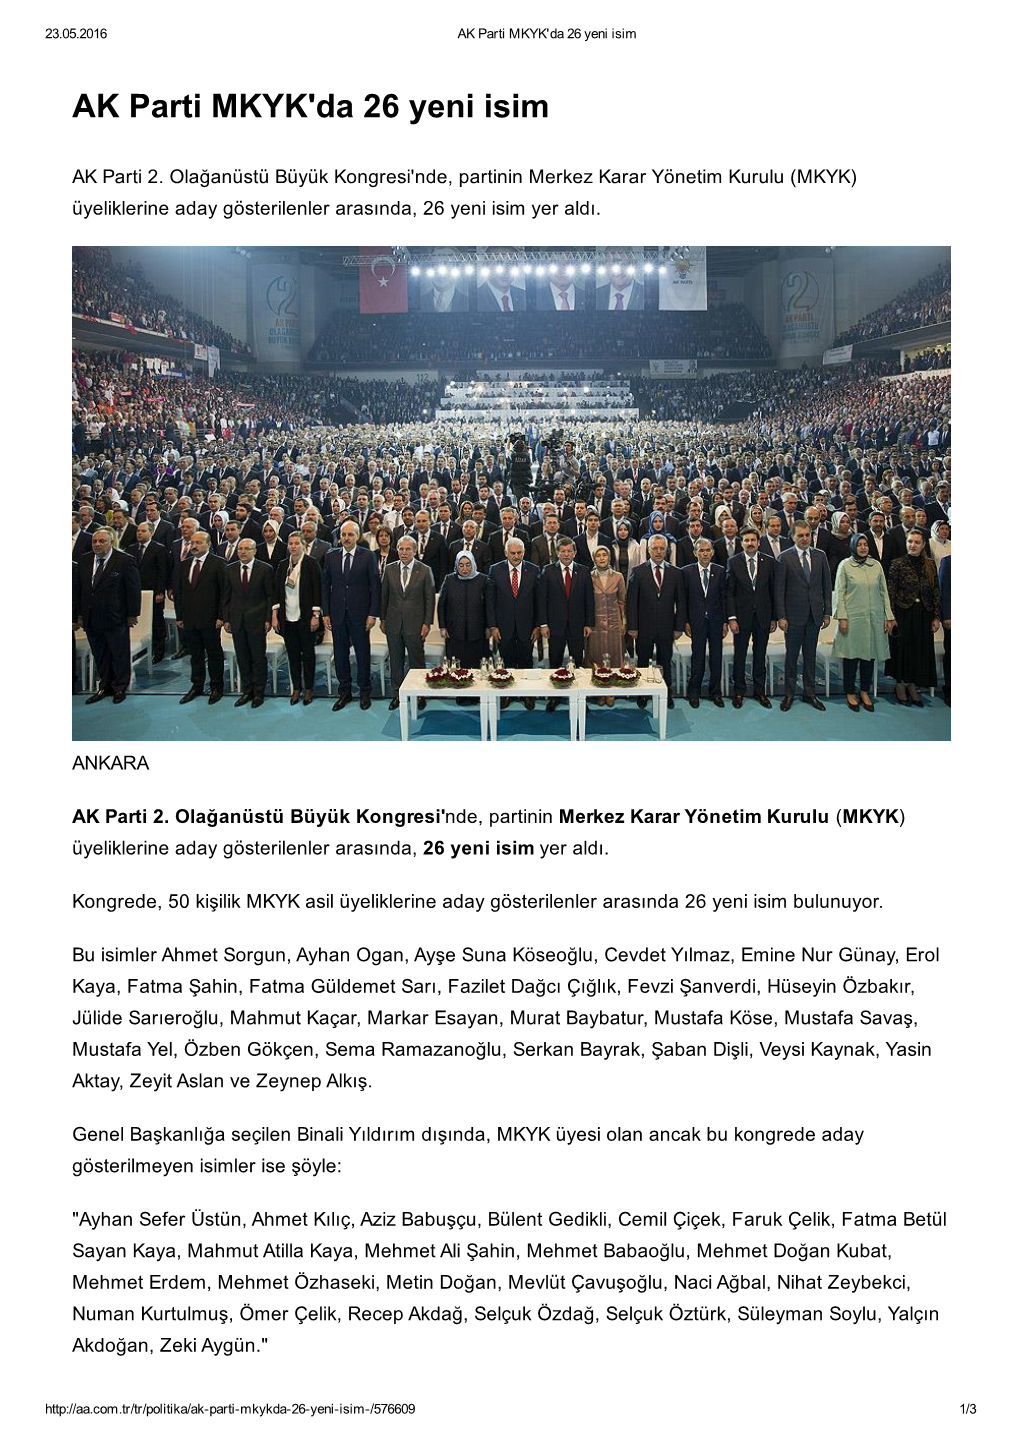 AK Parti MKYK'da 26 Yeni Isim